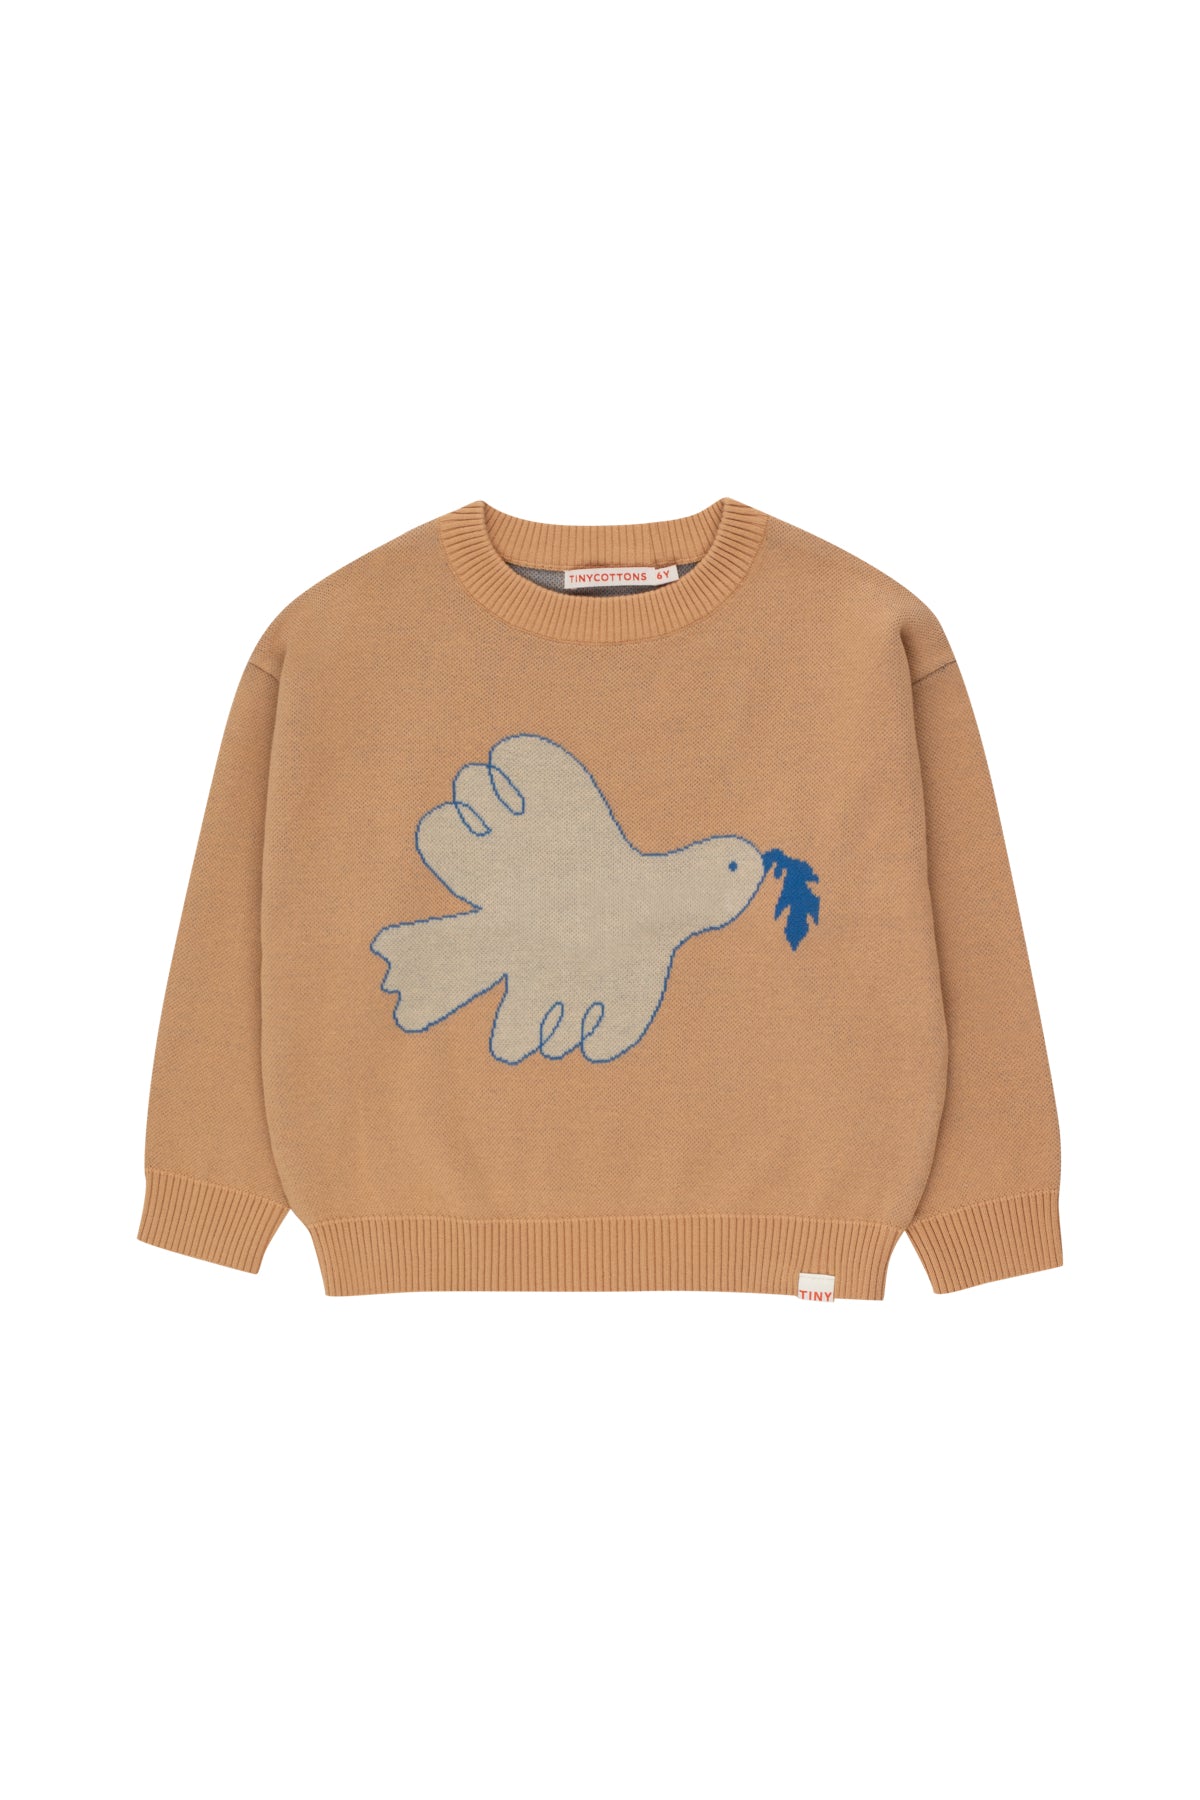 Peace Sweater - almond